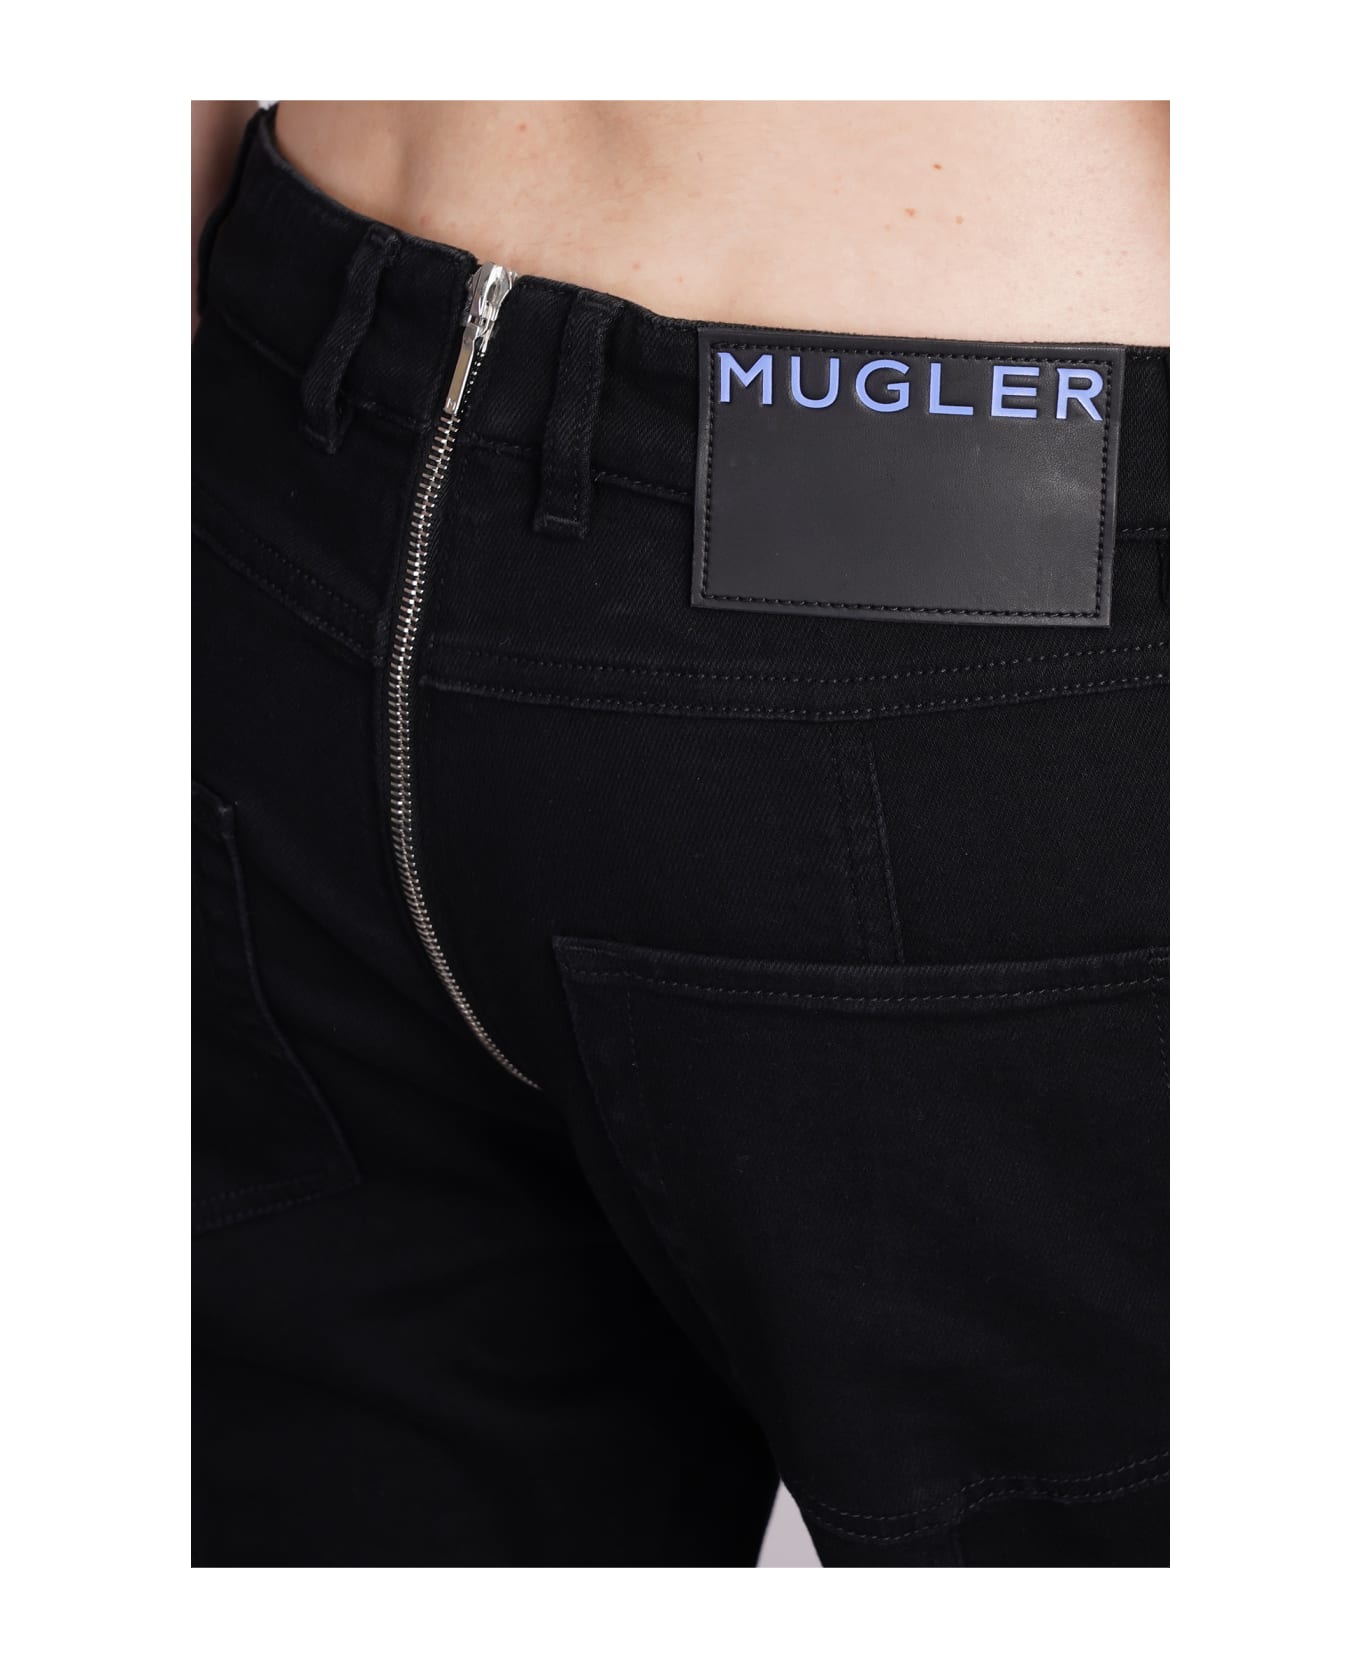 Mugler Jeans In Black Denim - black